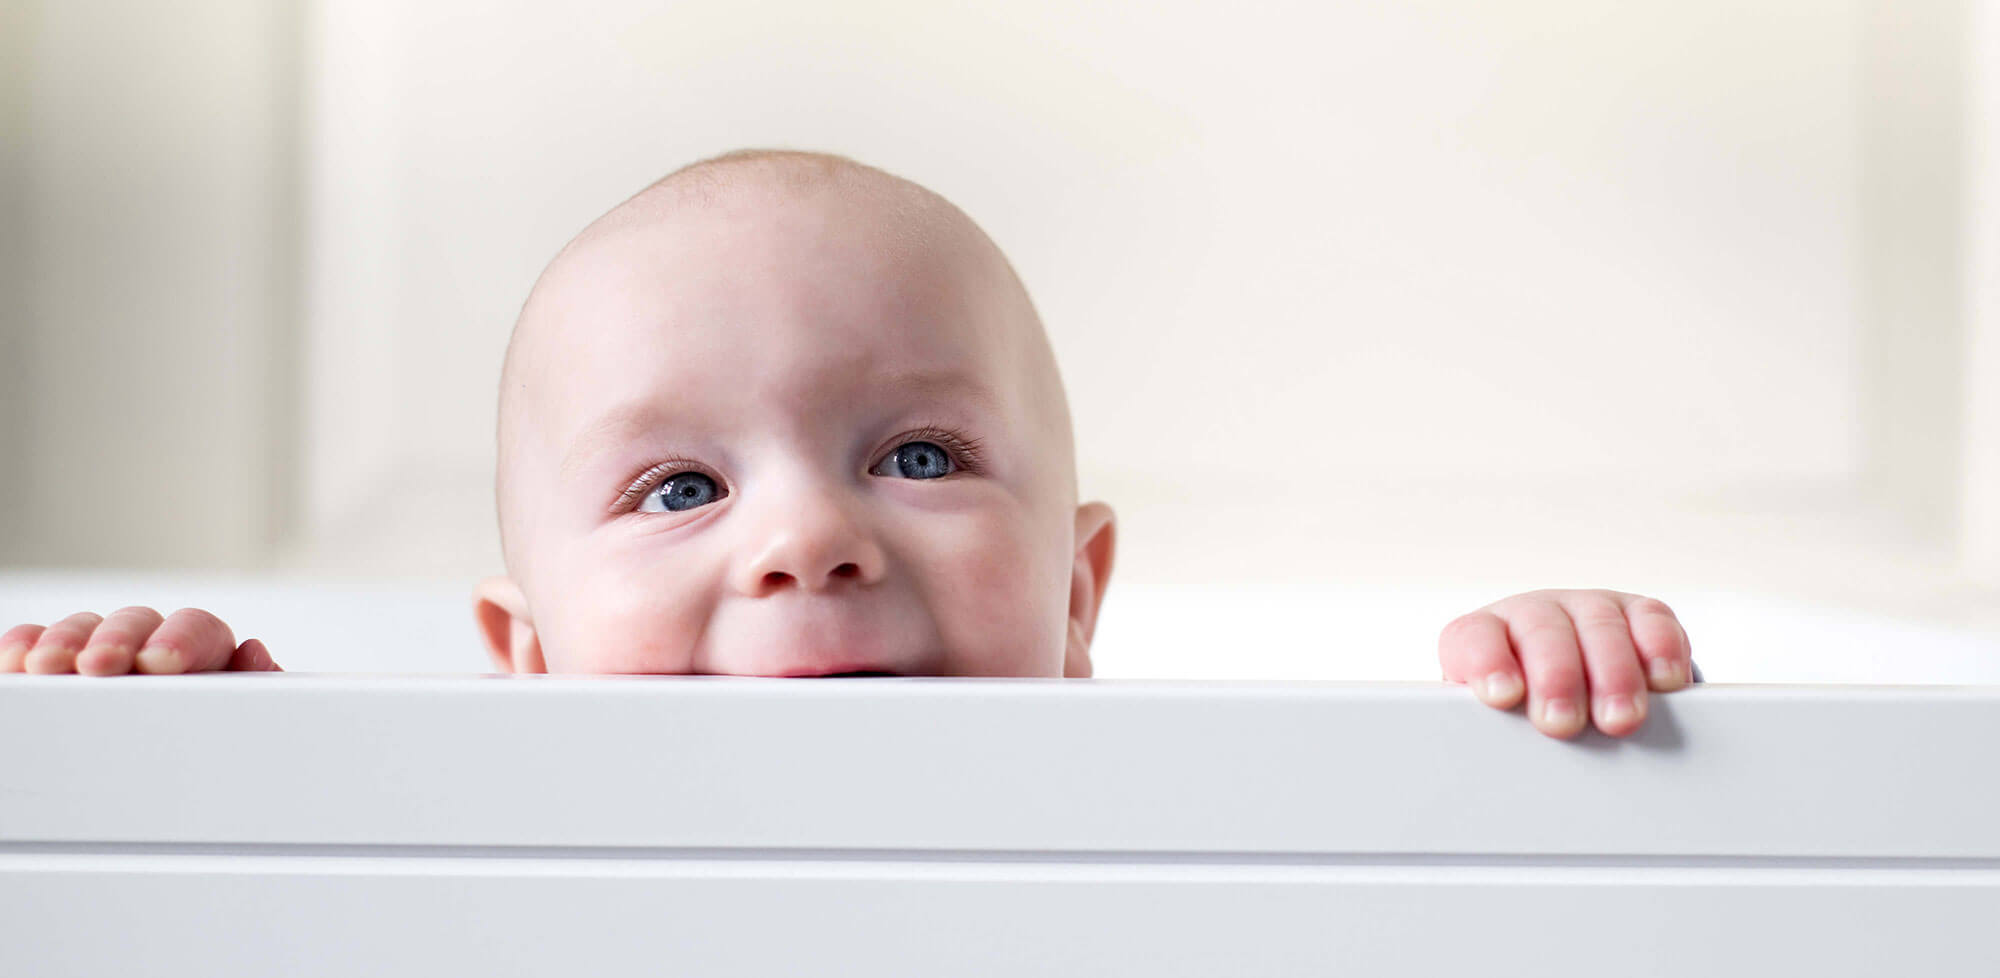 Baby peeking over side of cot